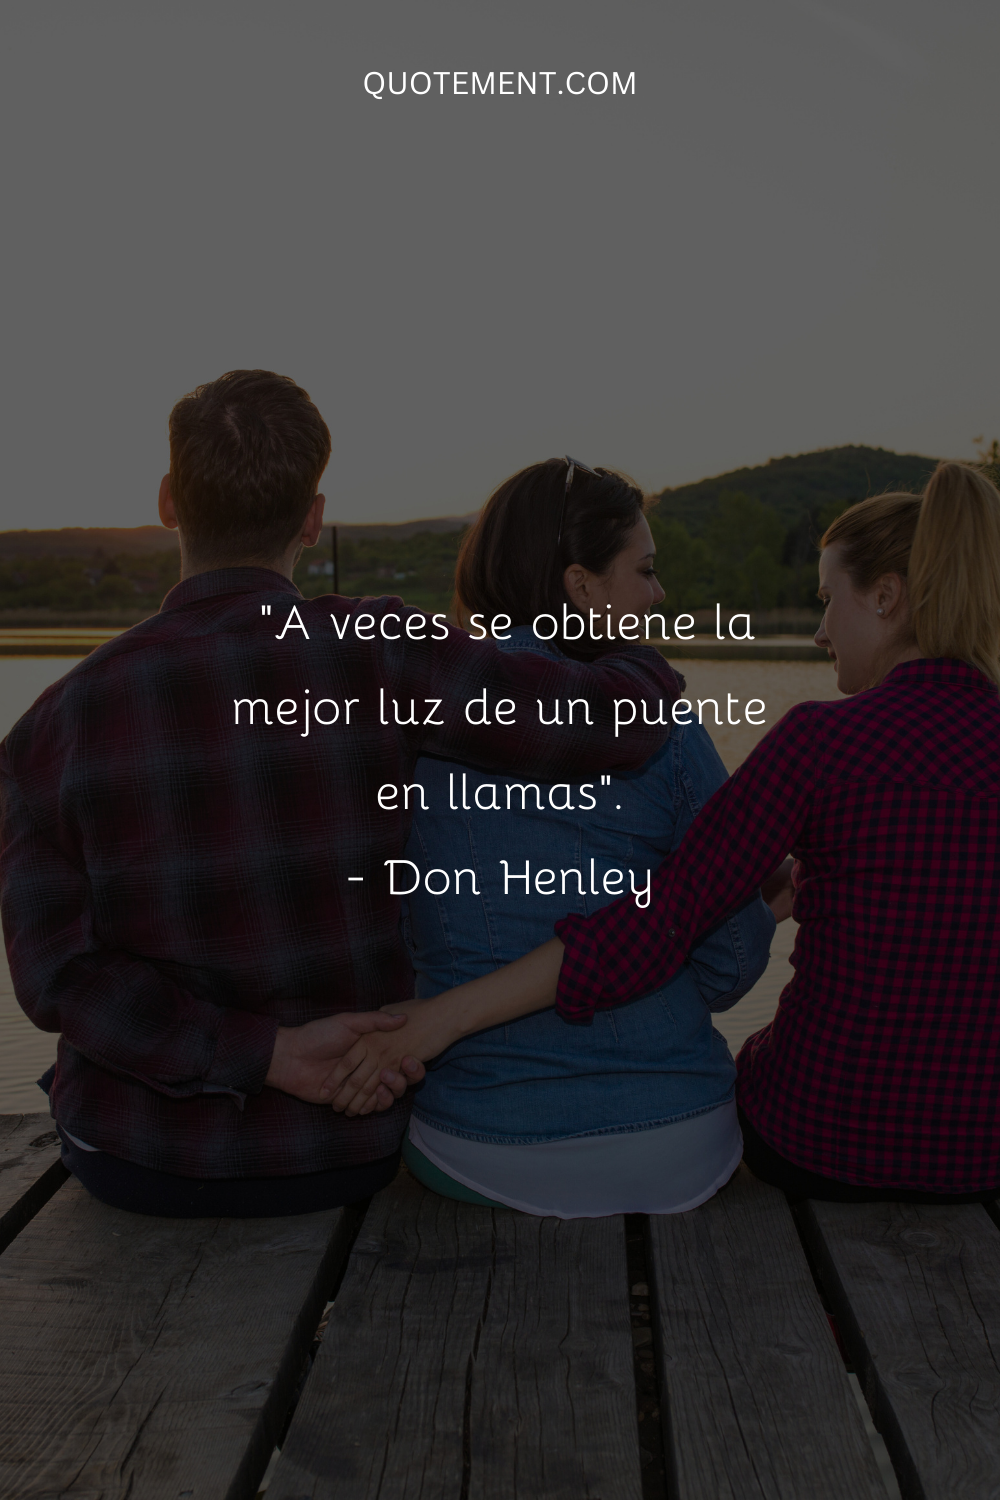 "A veces se obtiene la mejor luz de un puente en llamas". - Don Henley